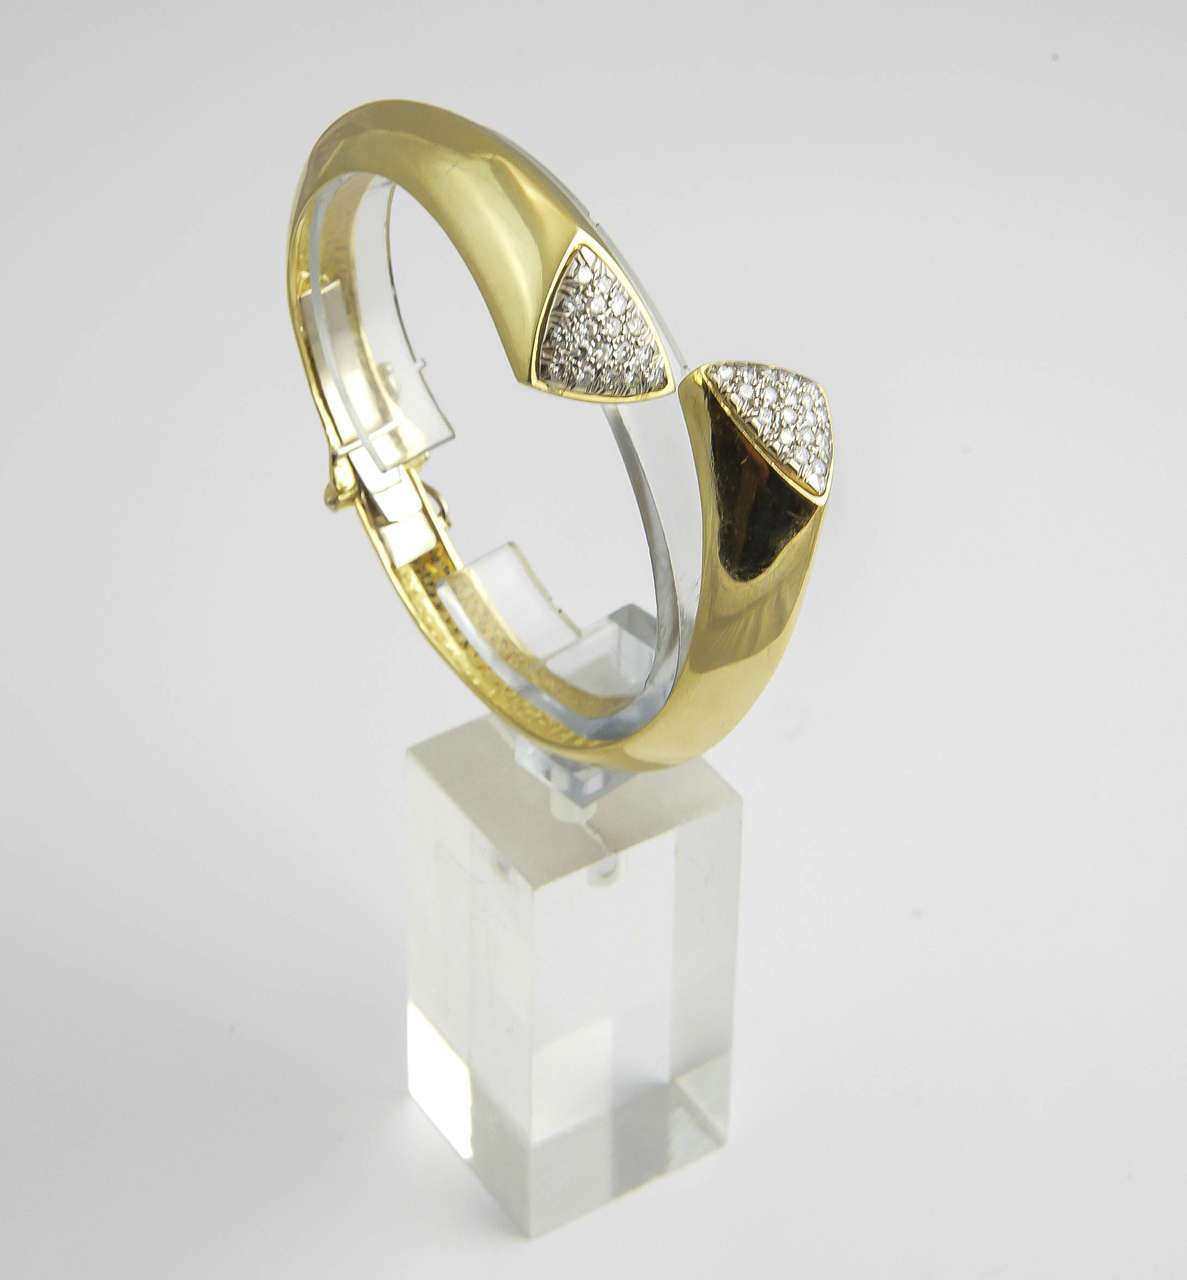 Geometrischer Armreif mit Scharnier aus 18 Karat Gold mit gepflasterten Diamantdreiecken.
Das Innenmaß beträgt 6,5